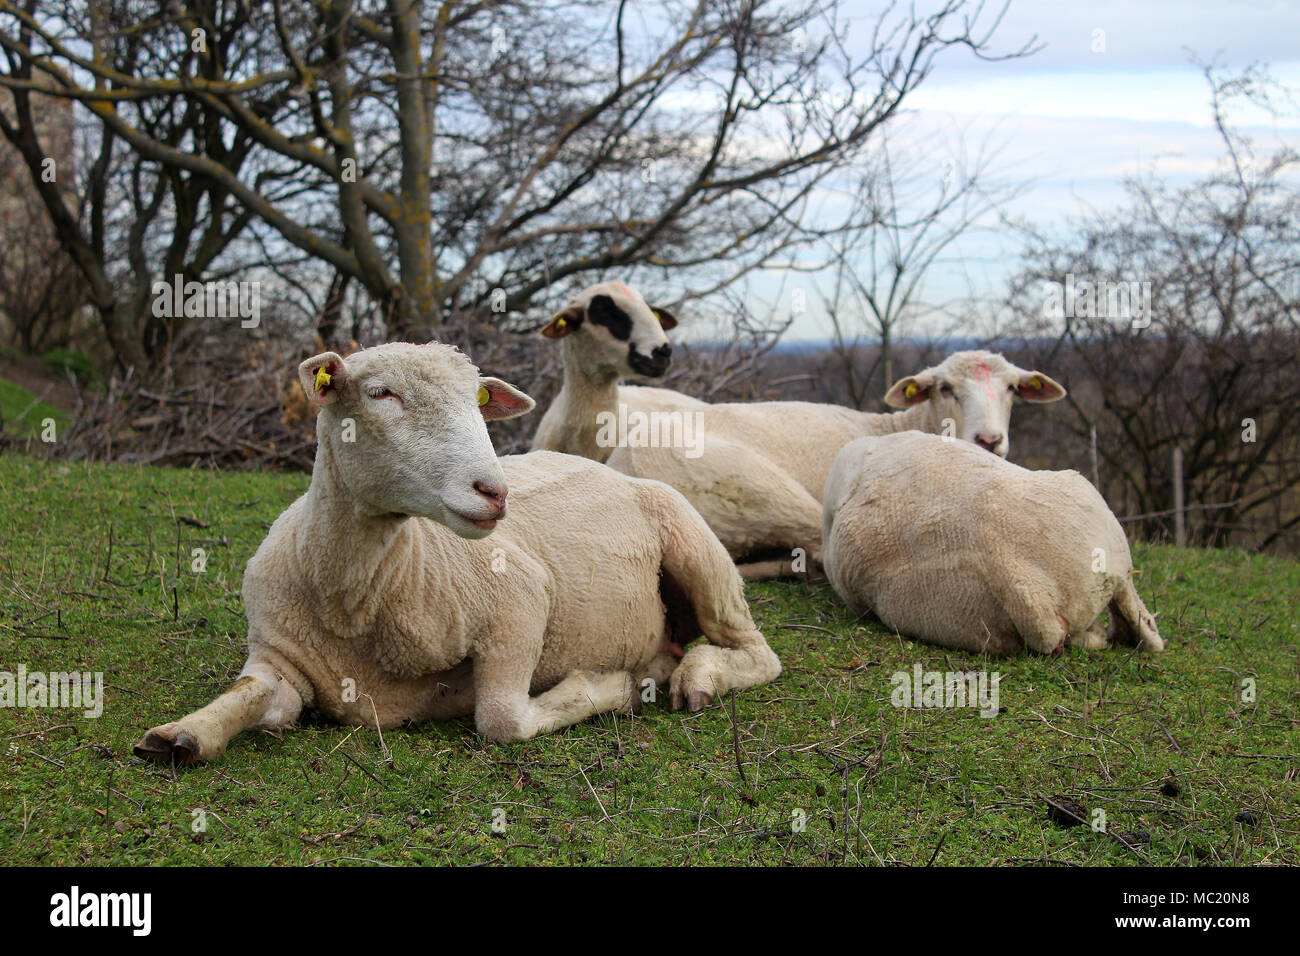 Herde Schafe auf einer Wiese, Frühjahr - Bauernhof Tiere Stockfoto